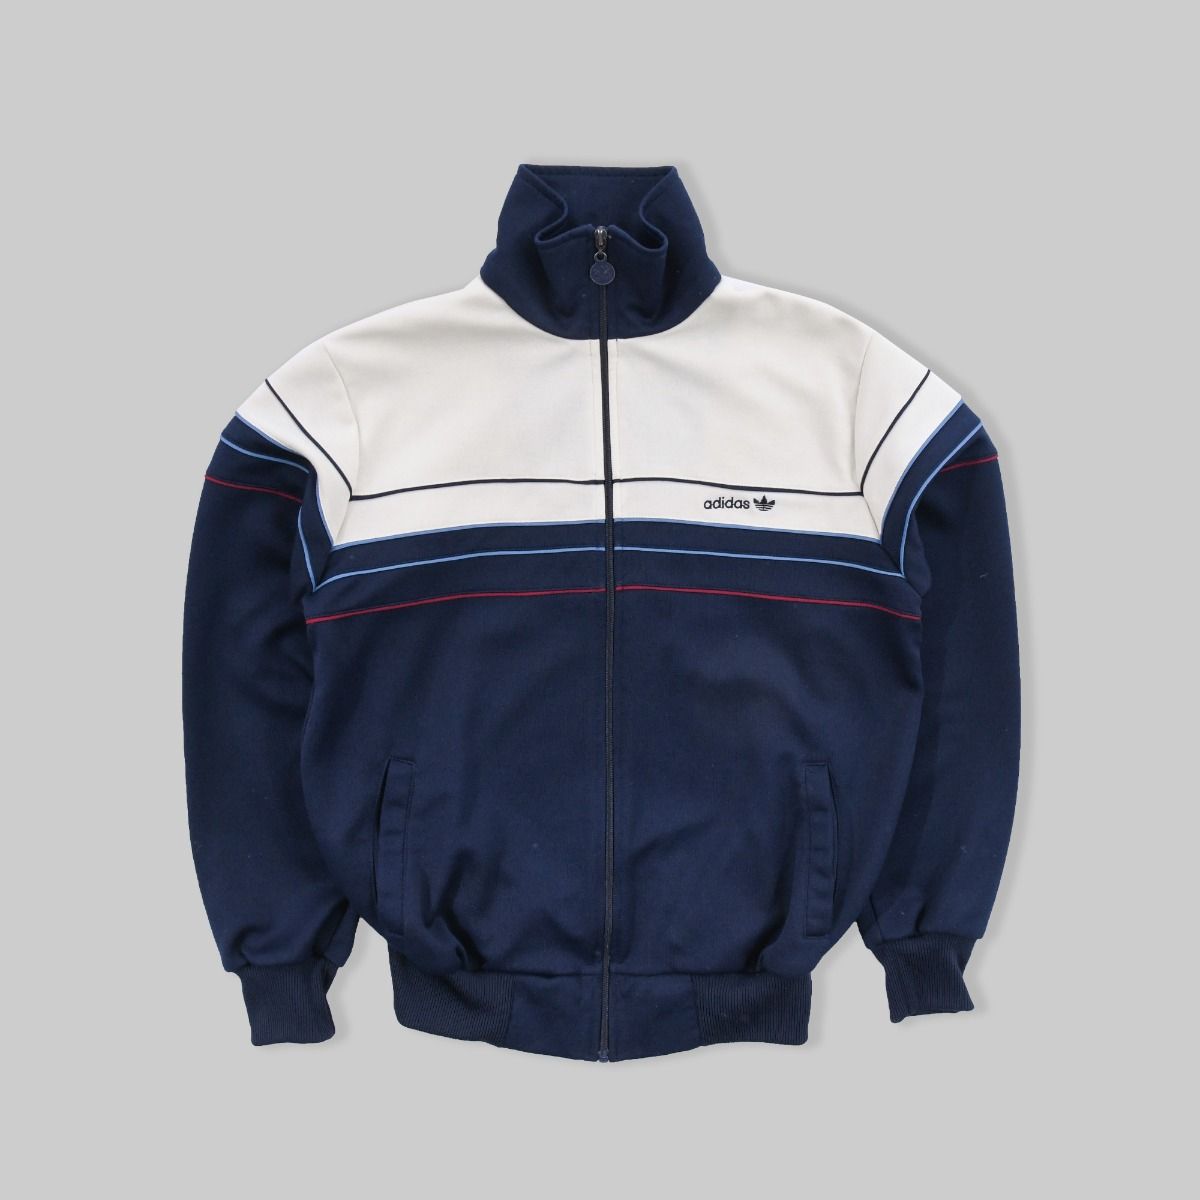 Adidas 1980s Piping Jacket